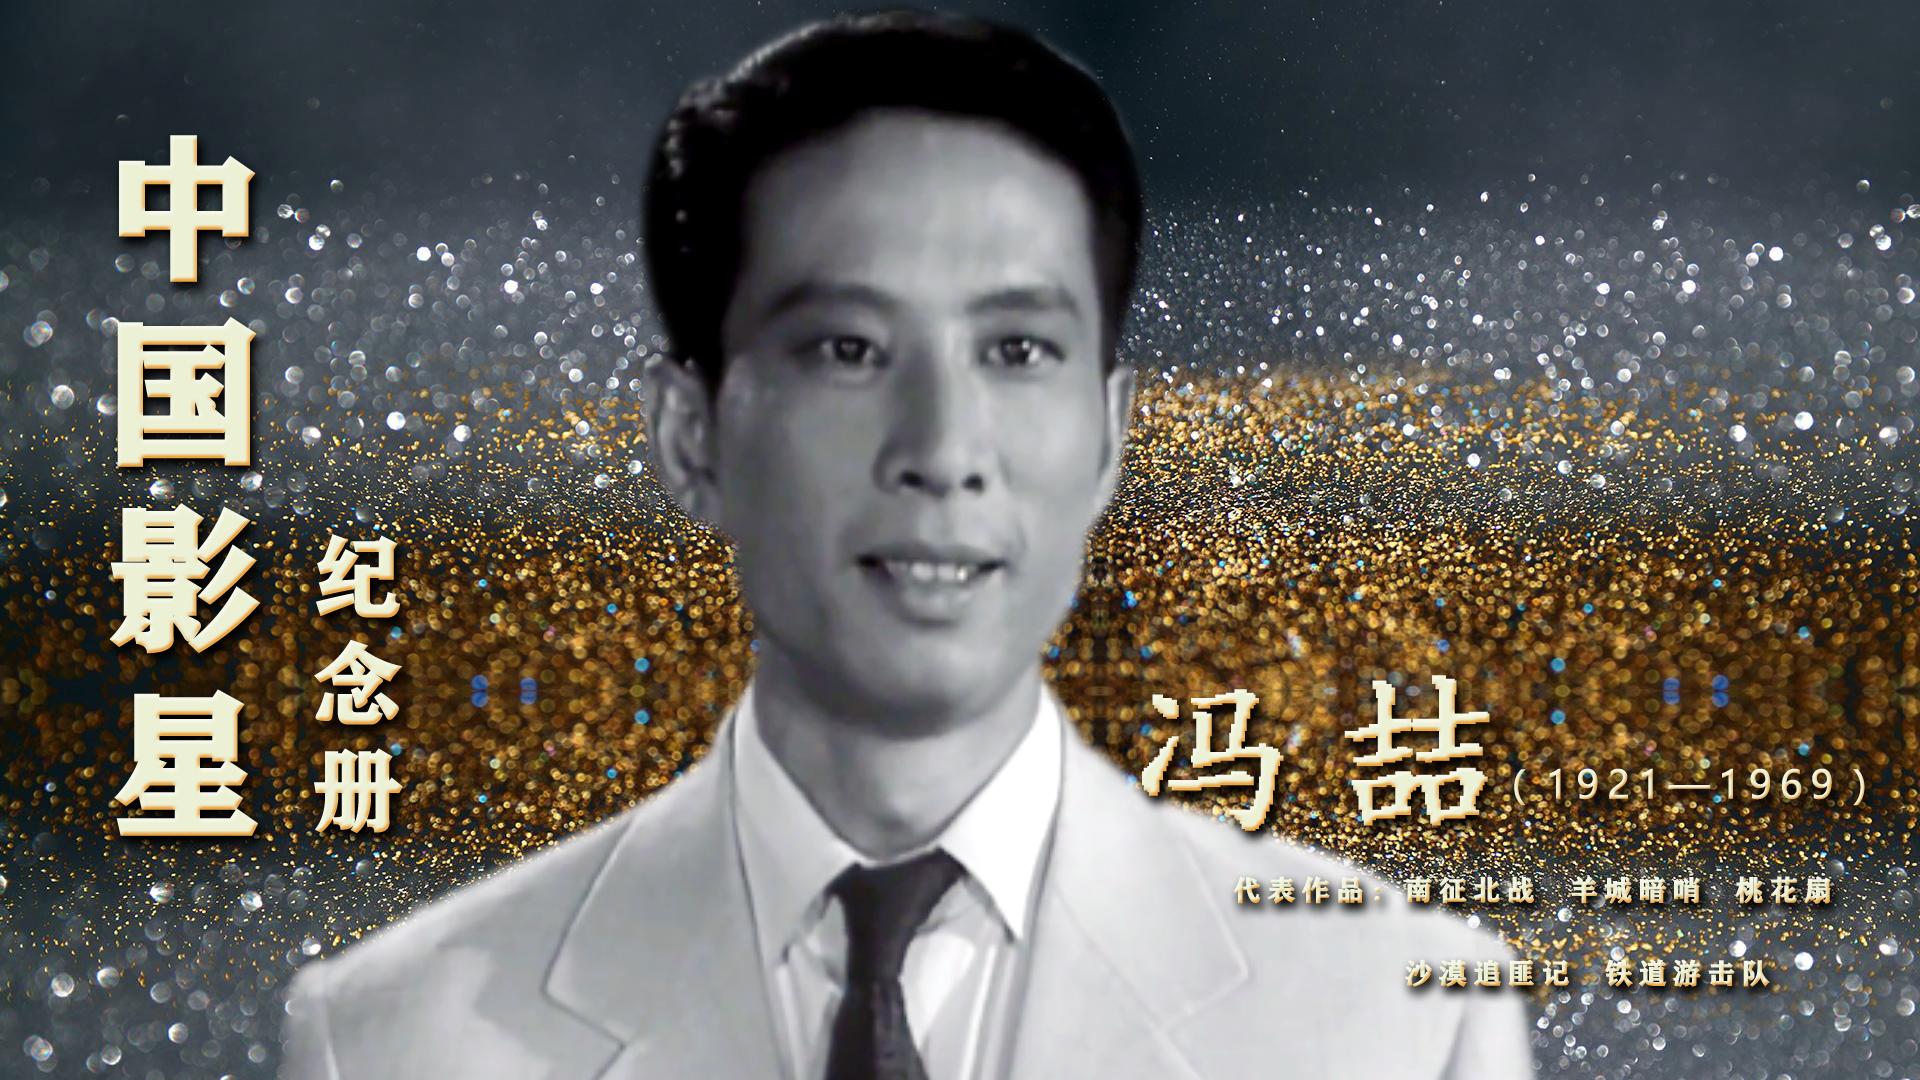 中国影星李亚林22大明星之一后做导演佳作不断却57岁英年早逝